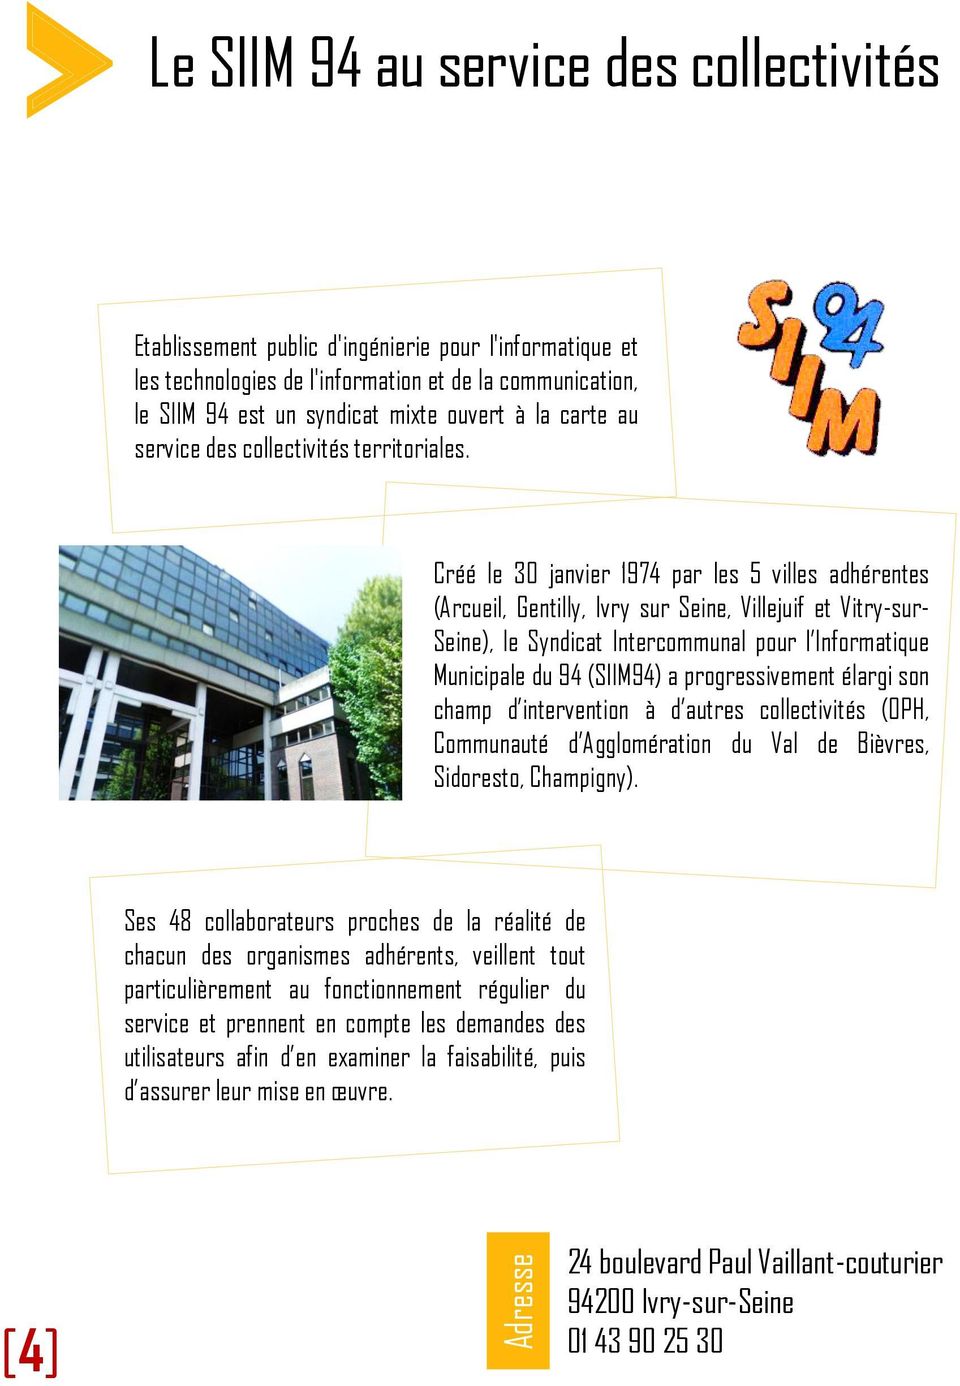 Créé le 30 janvier 1974 par les 5 villes adhérentes (Arcueil, Gentilly, Ivry sur Seine, Villejuif et Vitry-sur- Seine), le Syndicat Intercommunal pour l Informatique Municipale du 94 (SIIM94) a